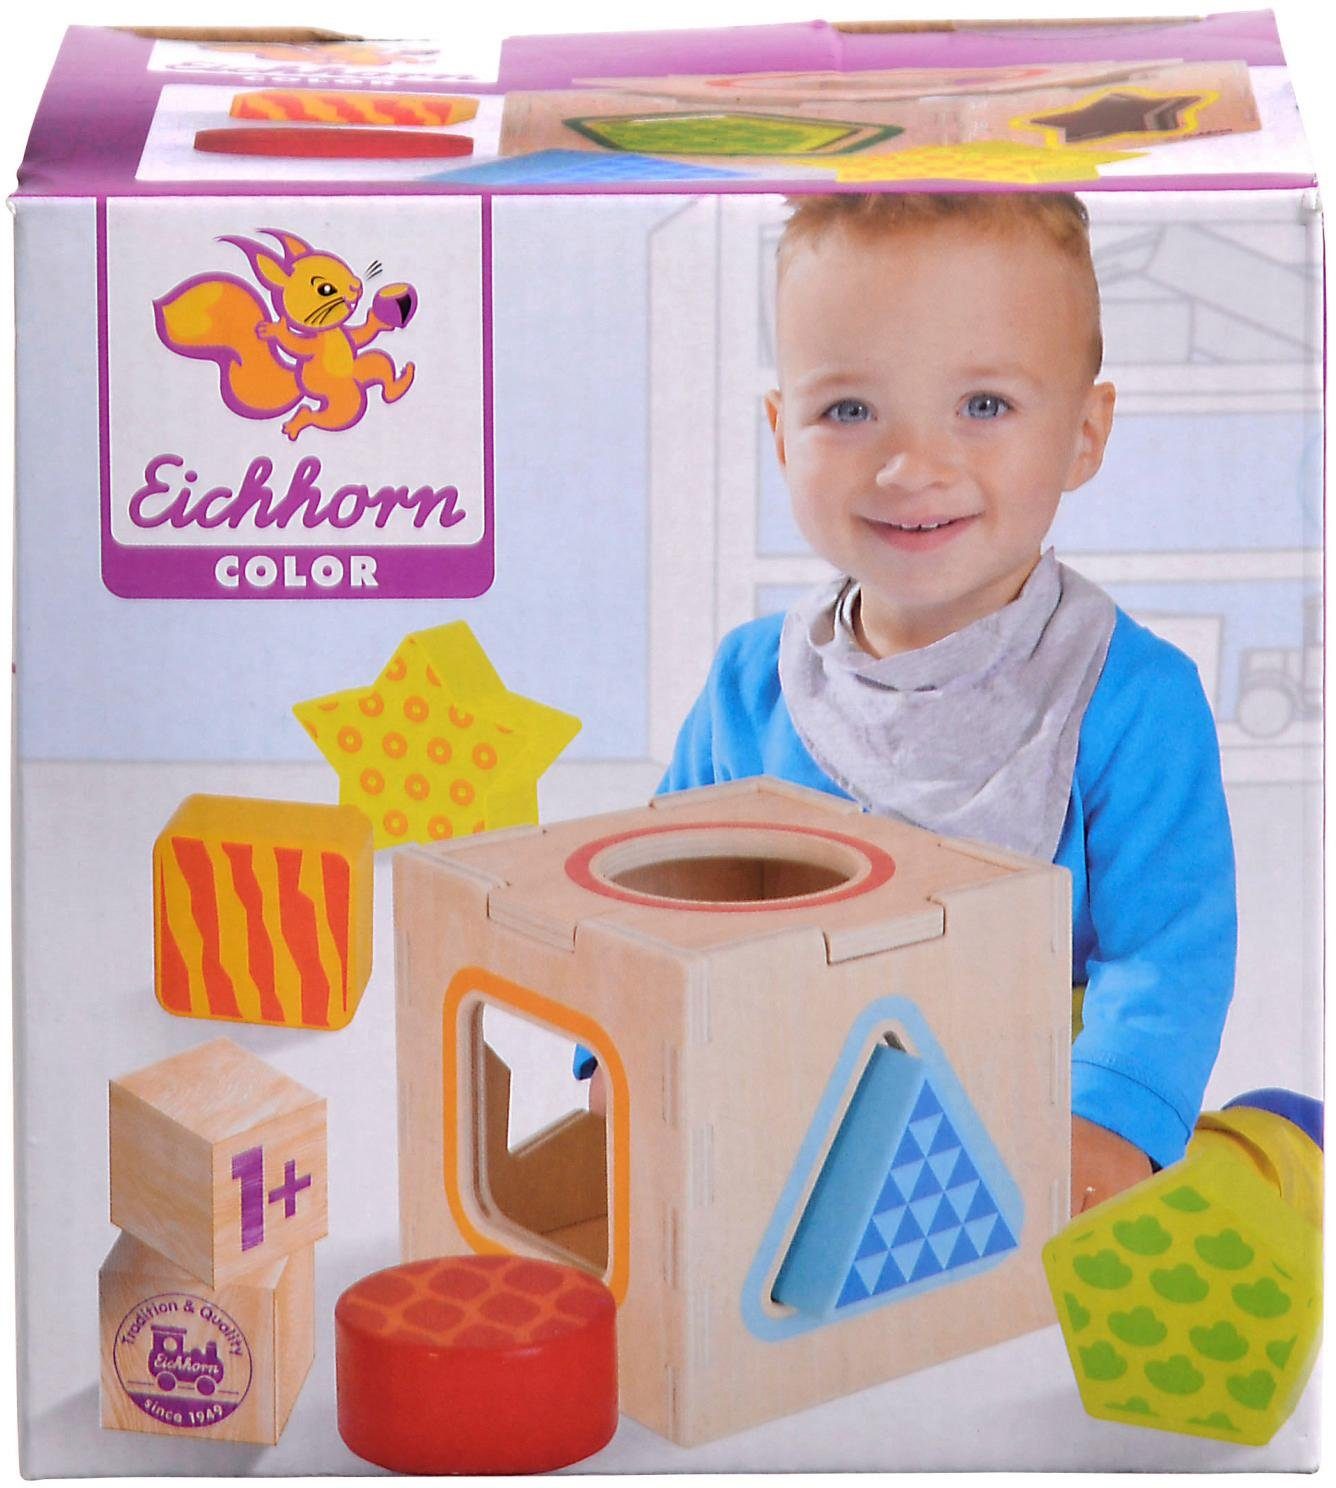 Eichhorn Color, Holz Steckbox, aus Steckspielzeug Holzspielzeug,